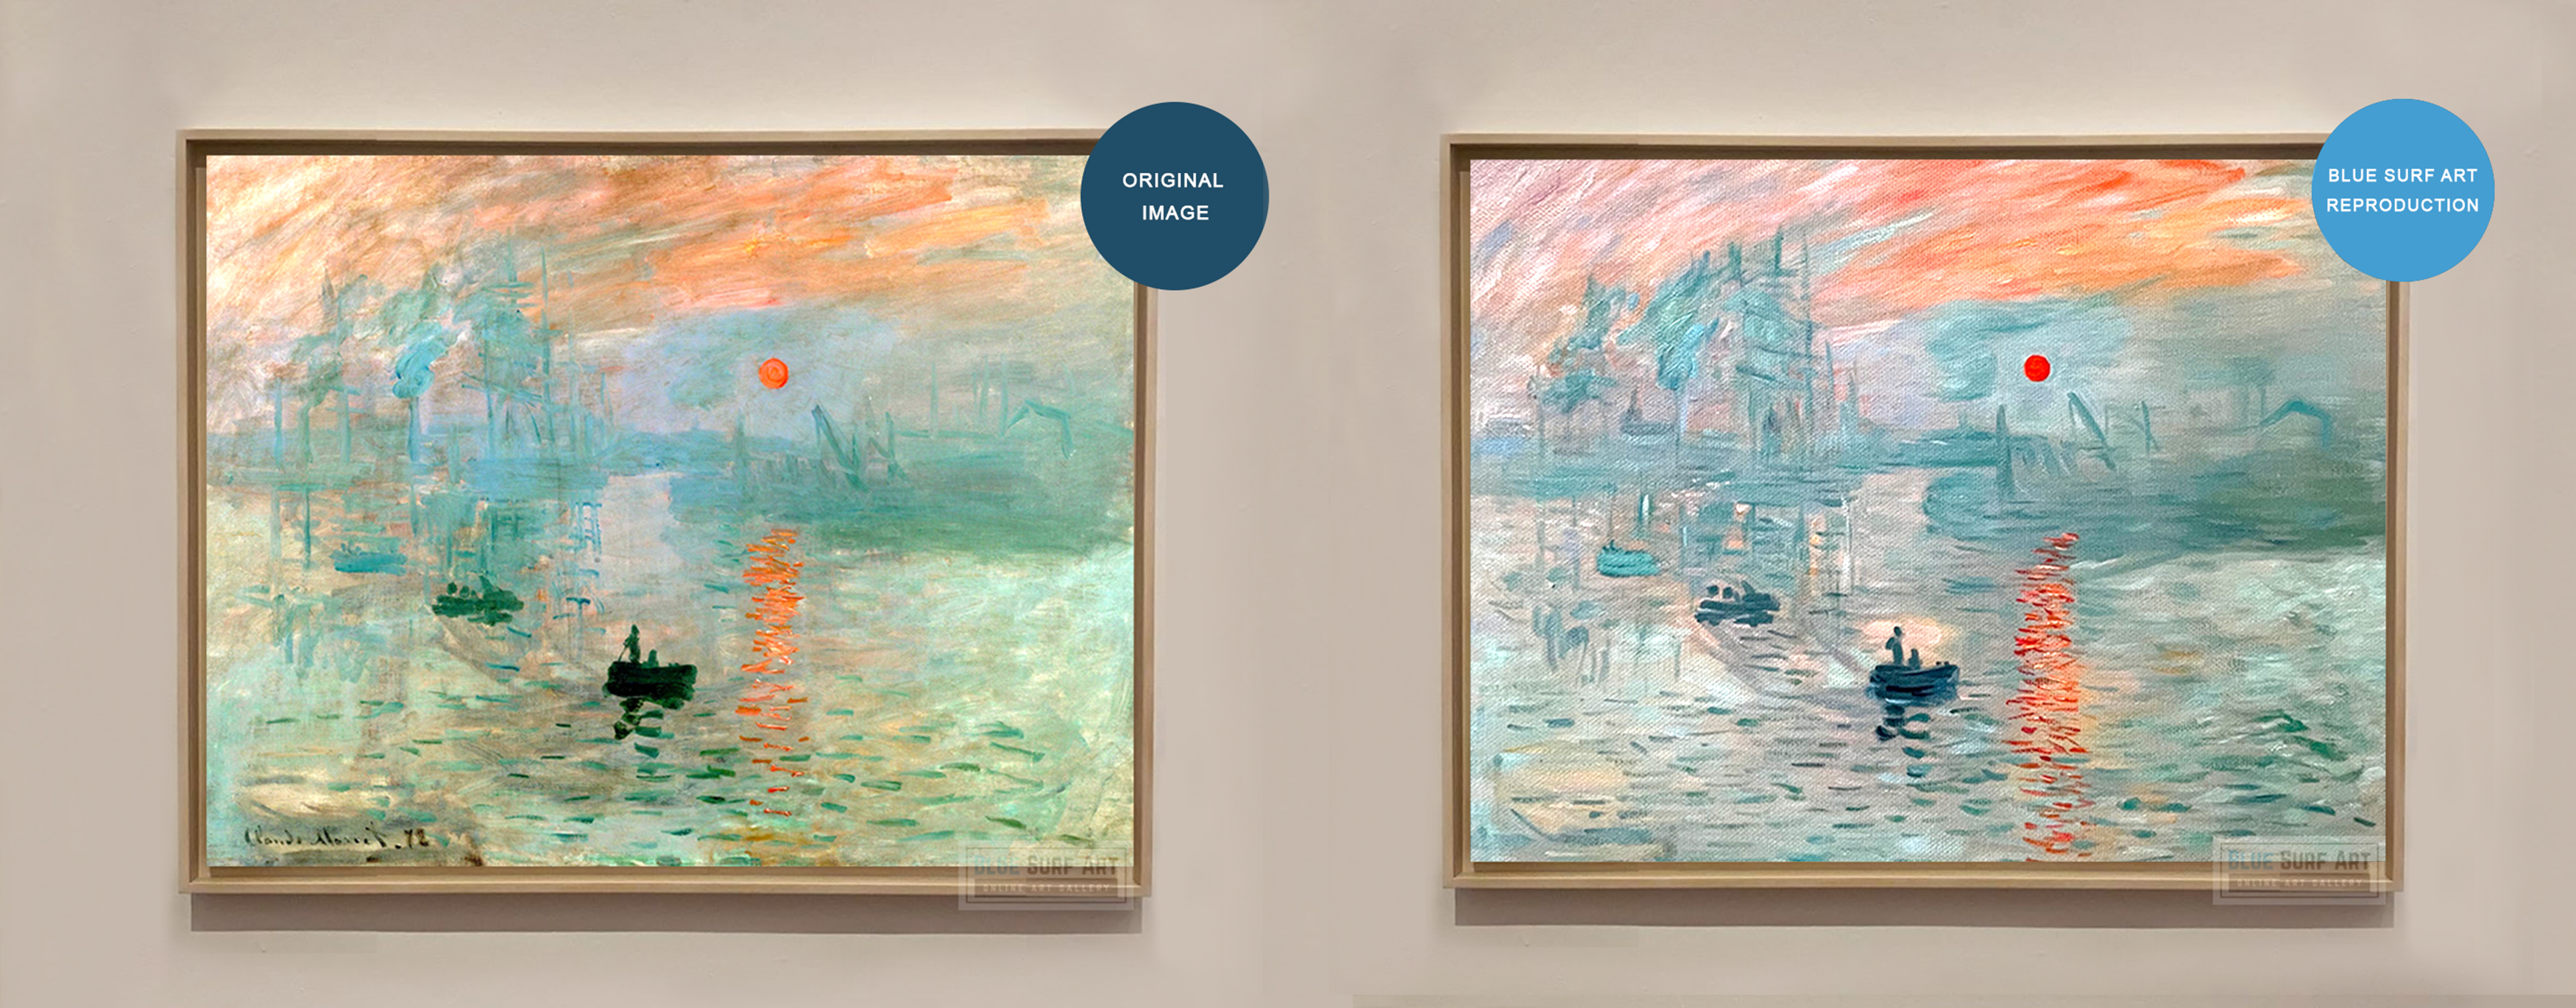 Impression Sunrise Claude Monet Compares Blue Surf Art Reproduction Painting